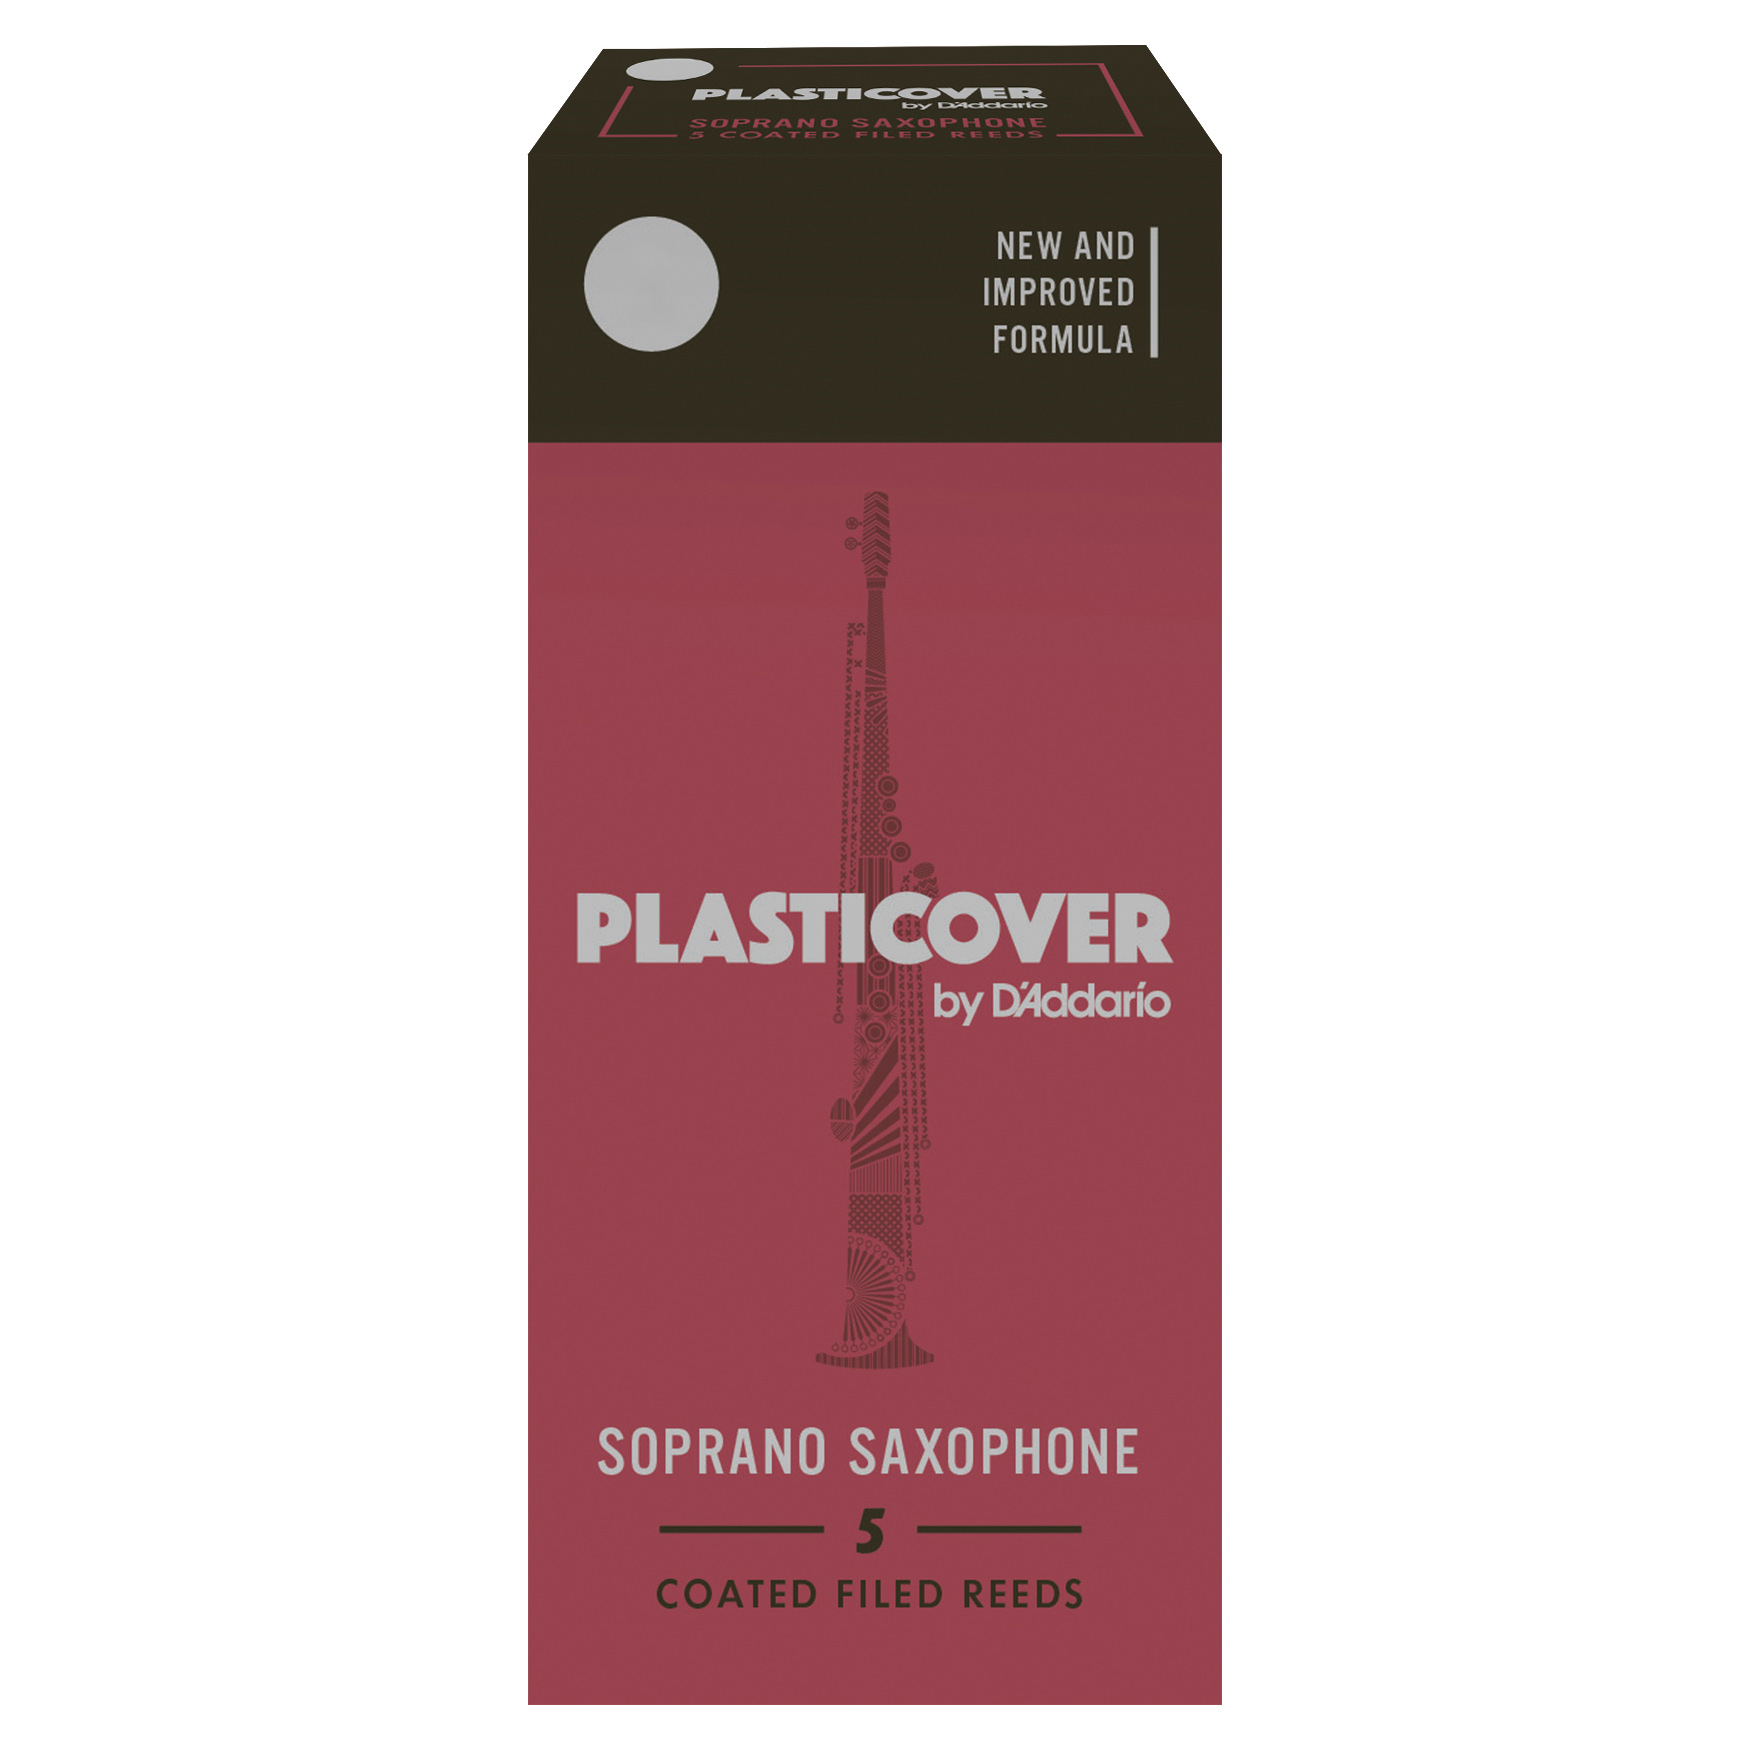 D'Addario Plasticover Reeds - Soprano Sax (Box of 5)